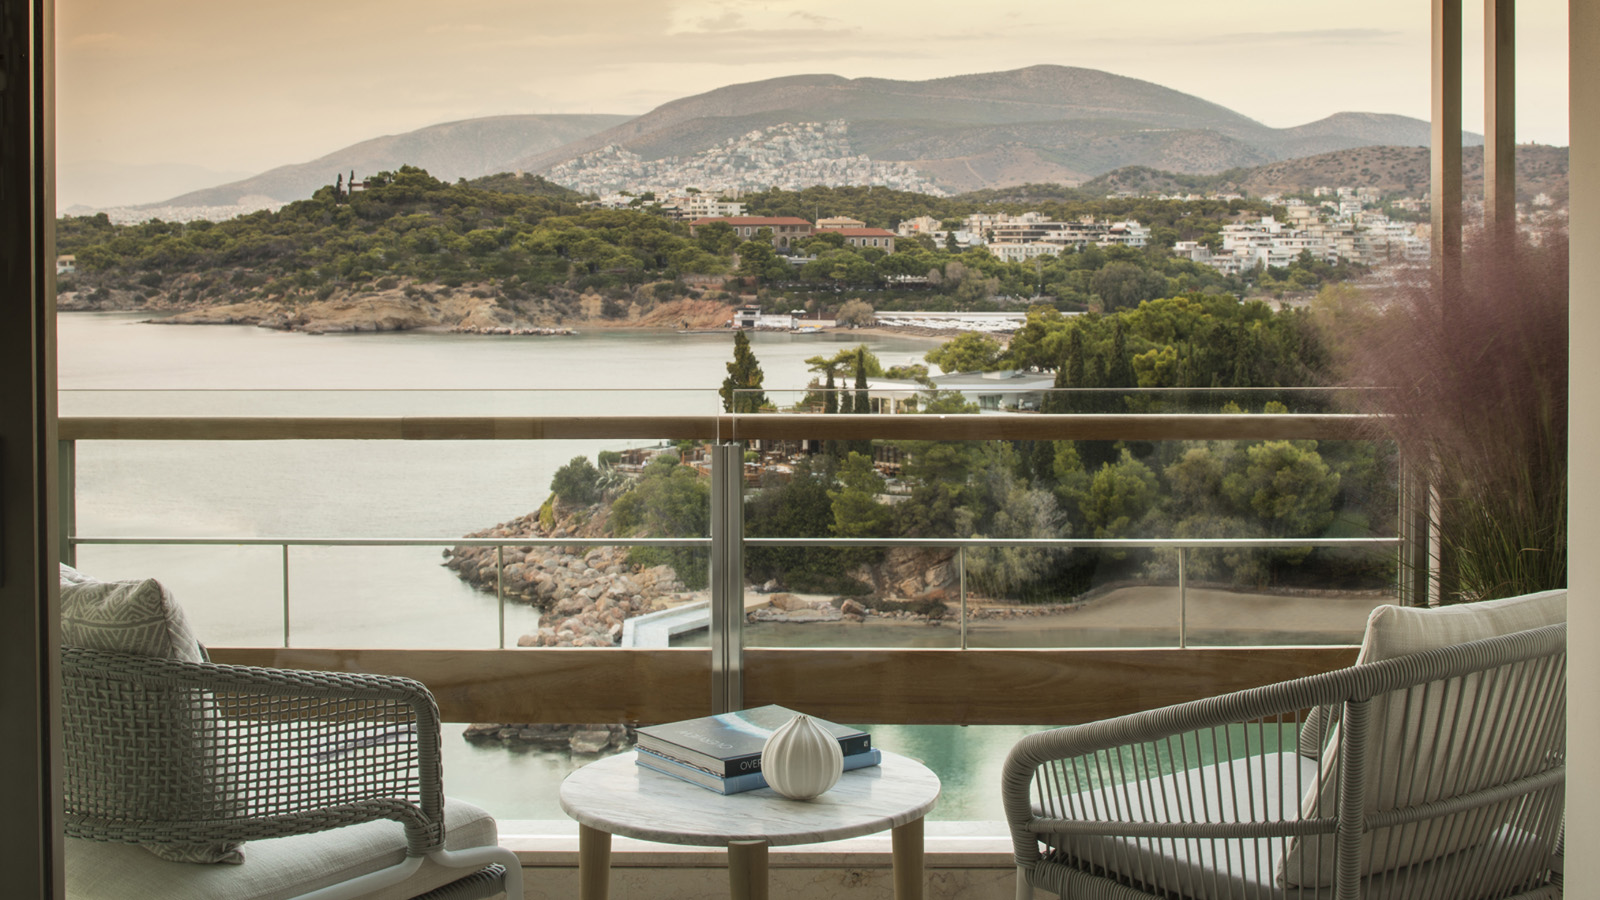 Four Seasons Astir Palace Hotel Athens - atenas - grécia